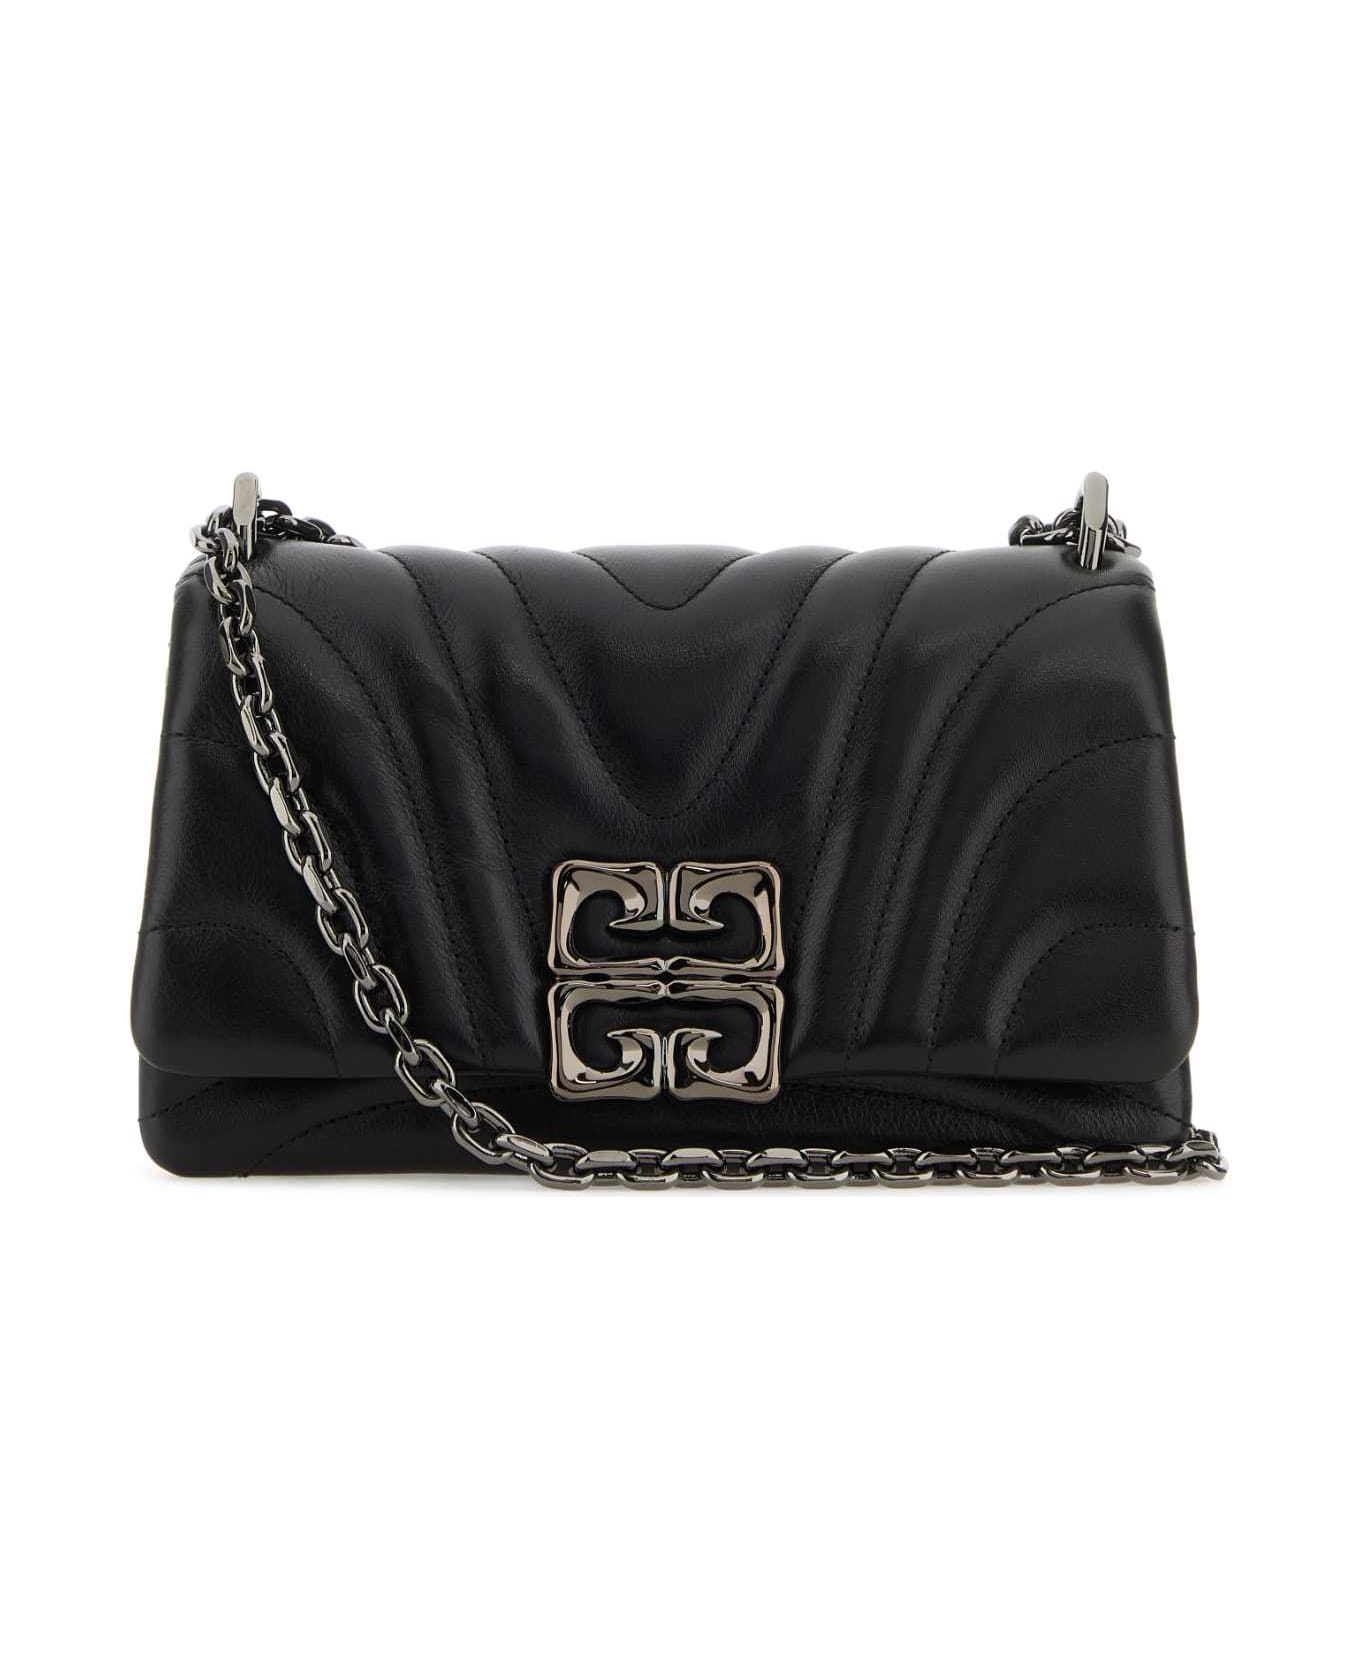 Givenchy Black Leather Small 4g Soft Shoulder Bag - Black